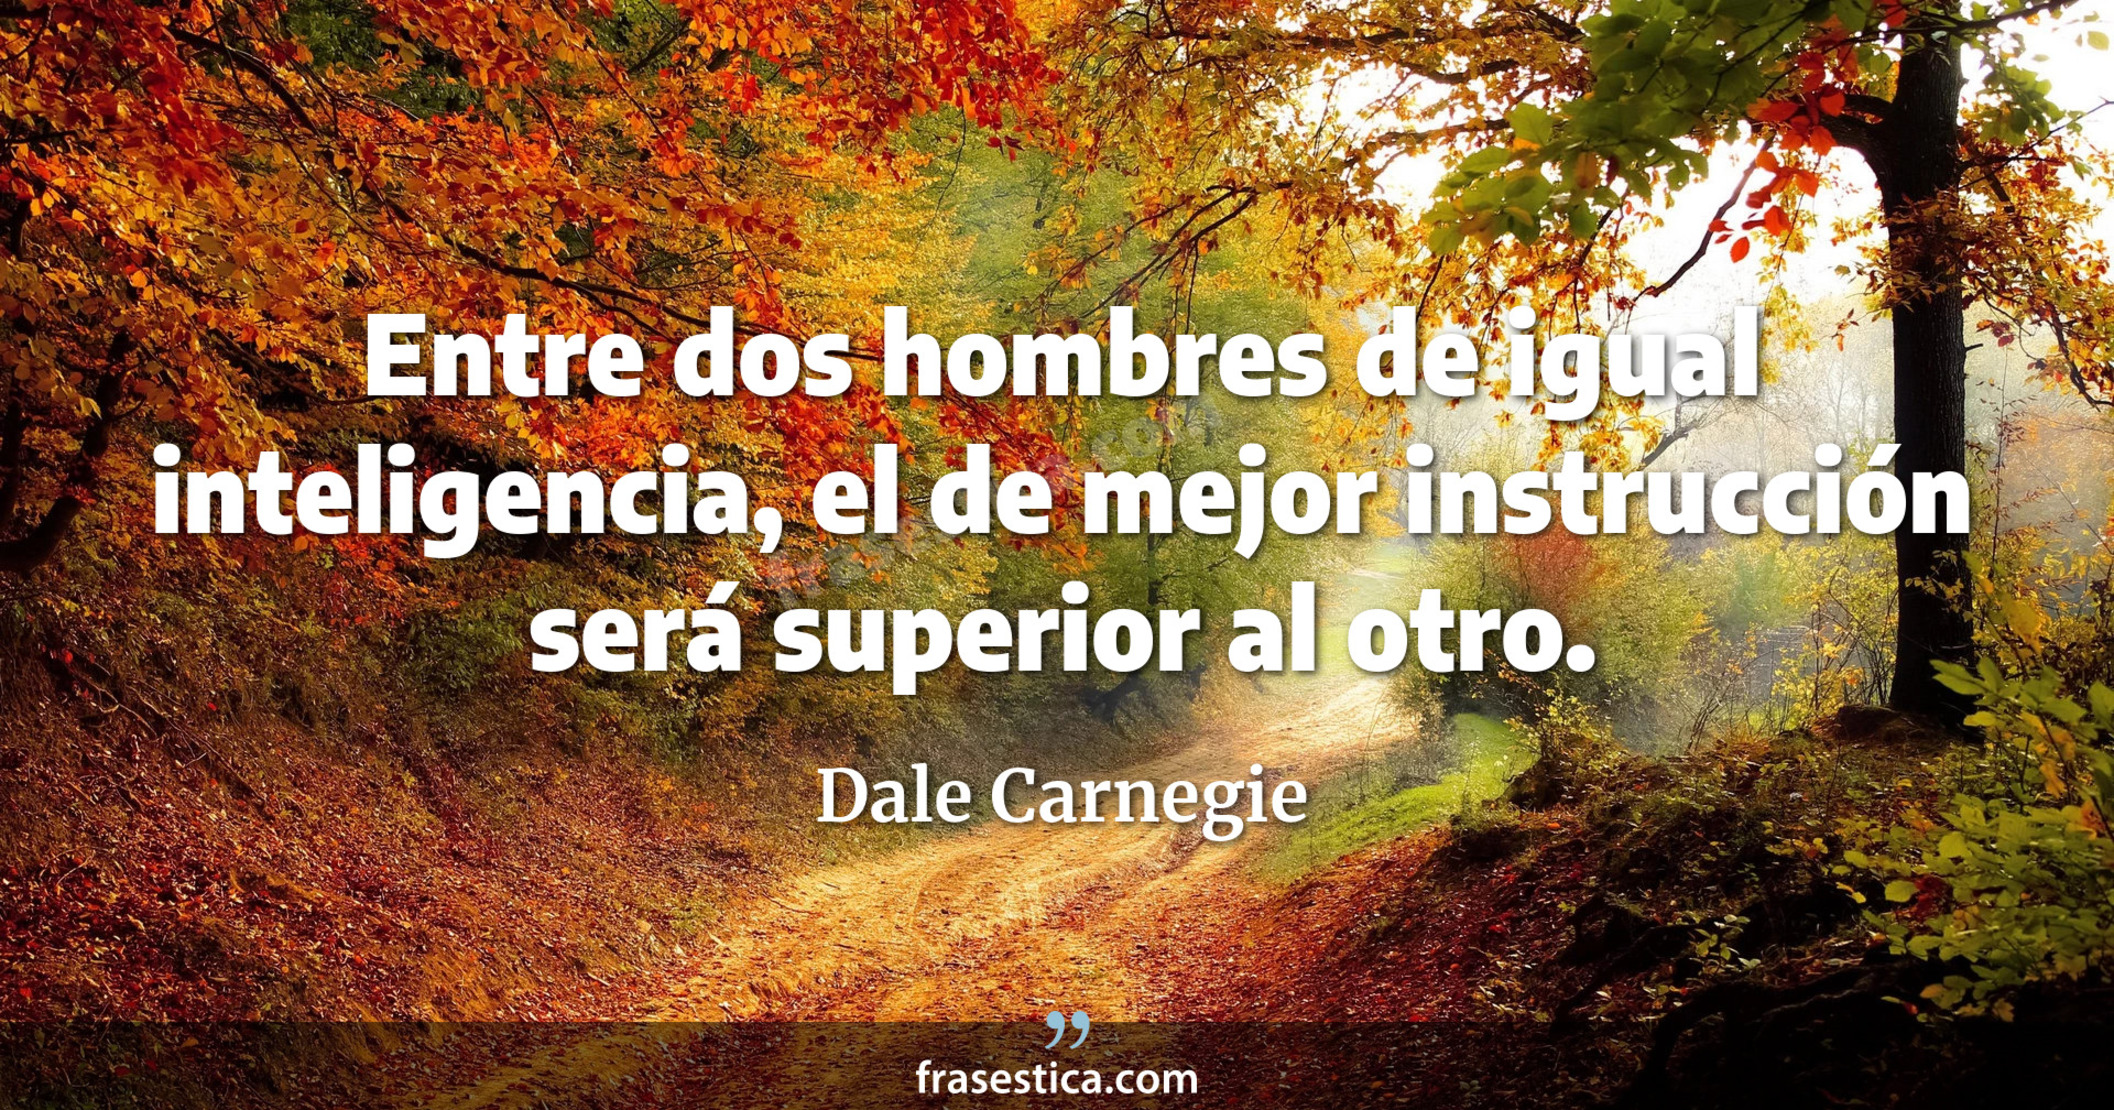 Entre dos hombres de igual inteligencia, el de mejor instrucción será superior al otro. - Dale Carnegie